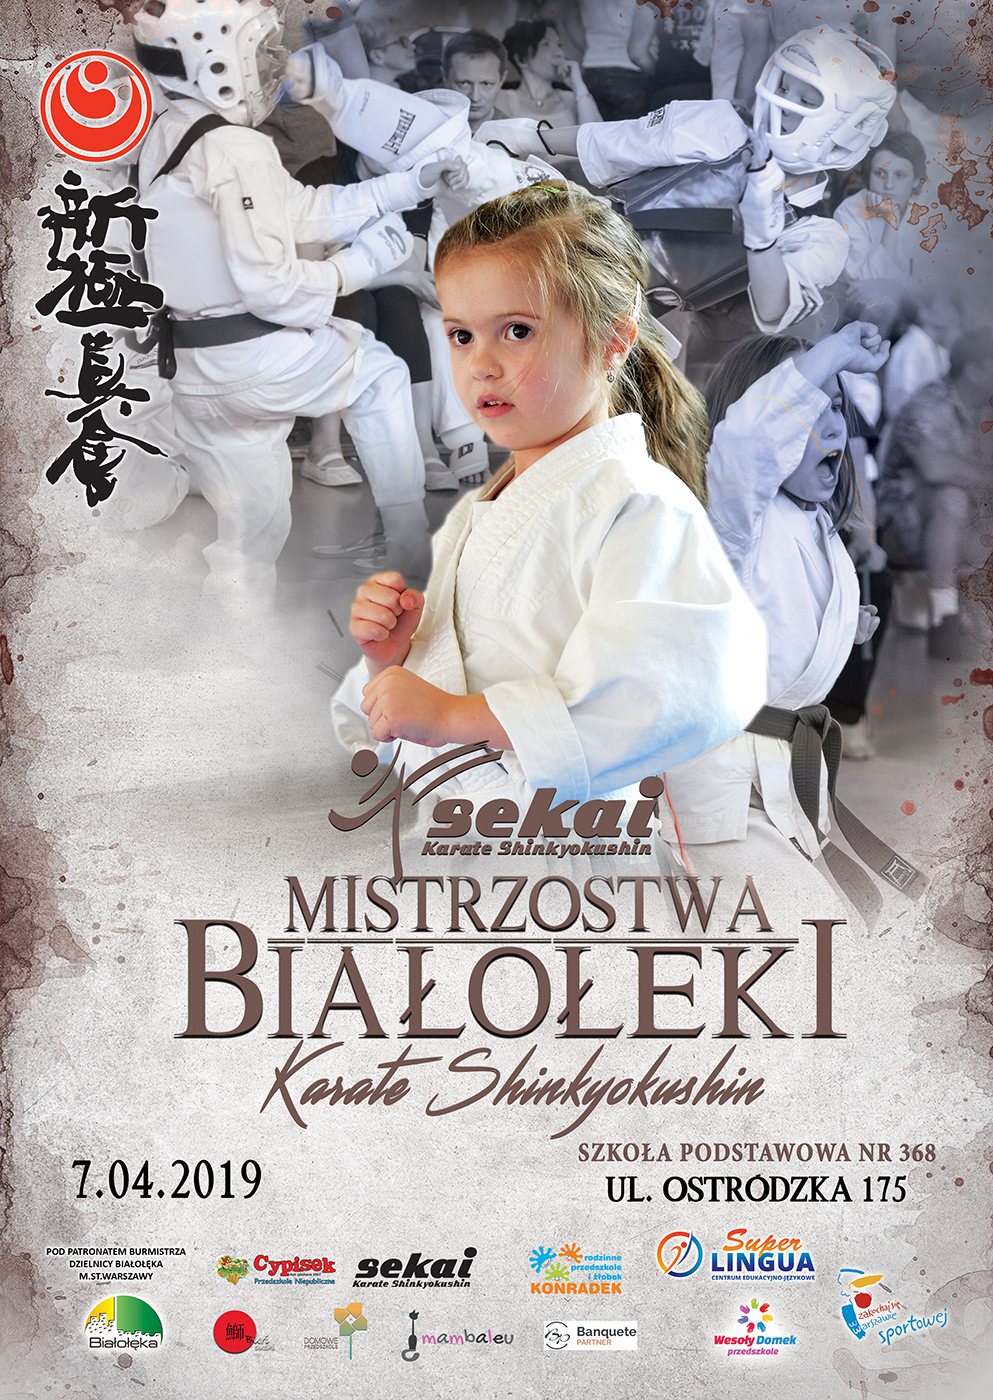 Mistrzostwa Białołęki w Karate Shinkyokushin 2019